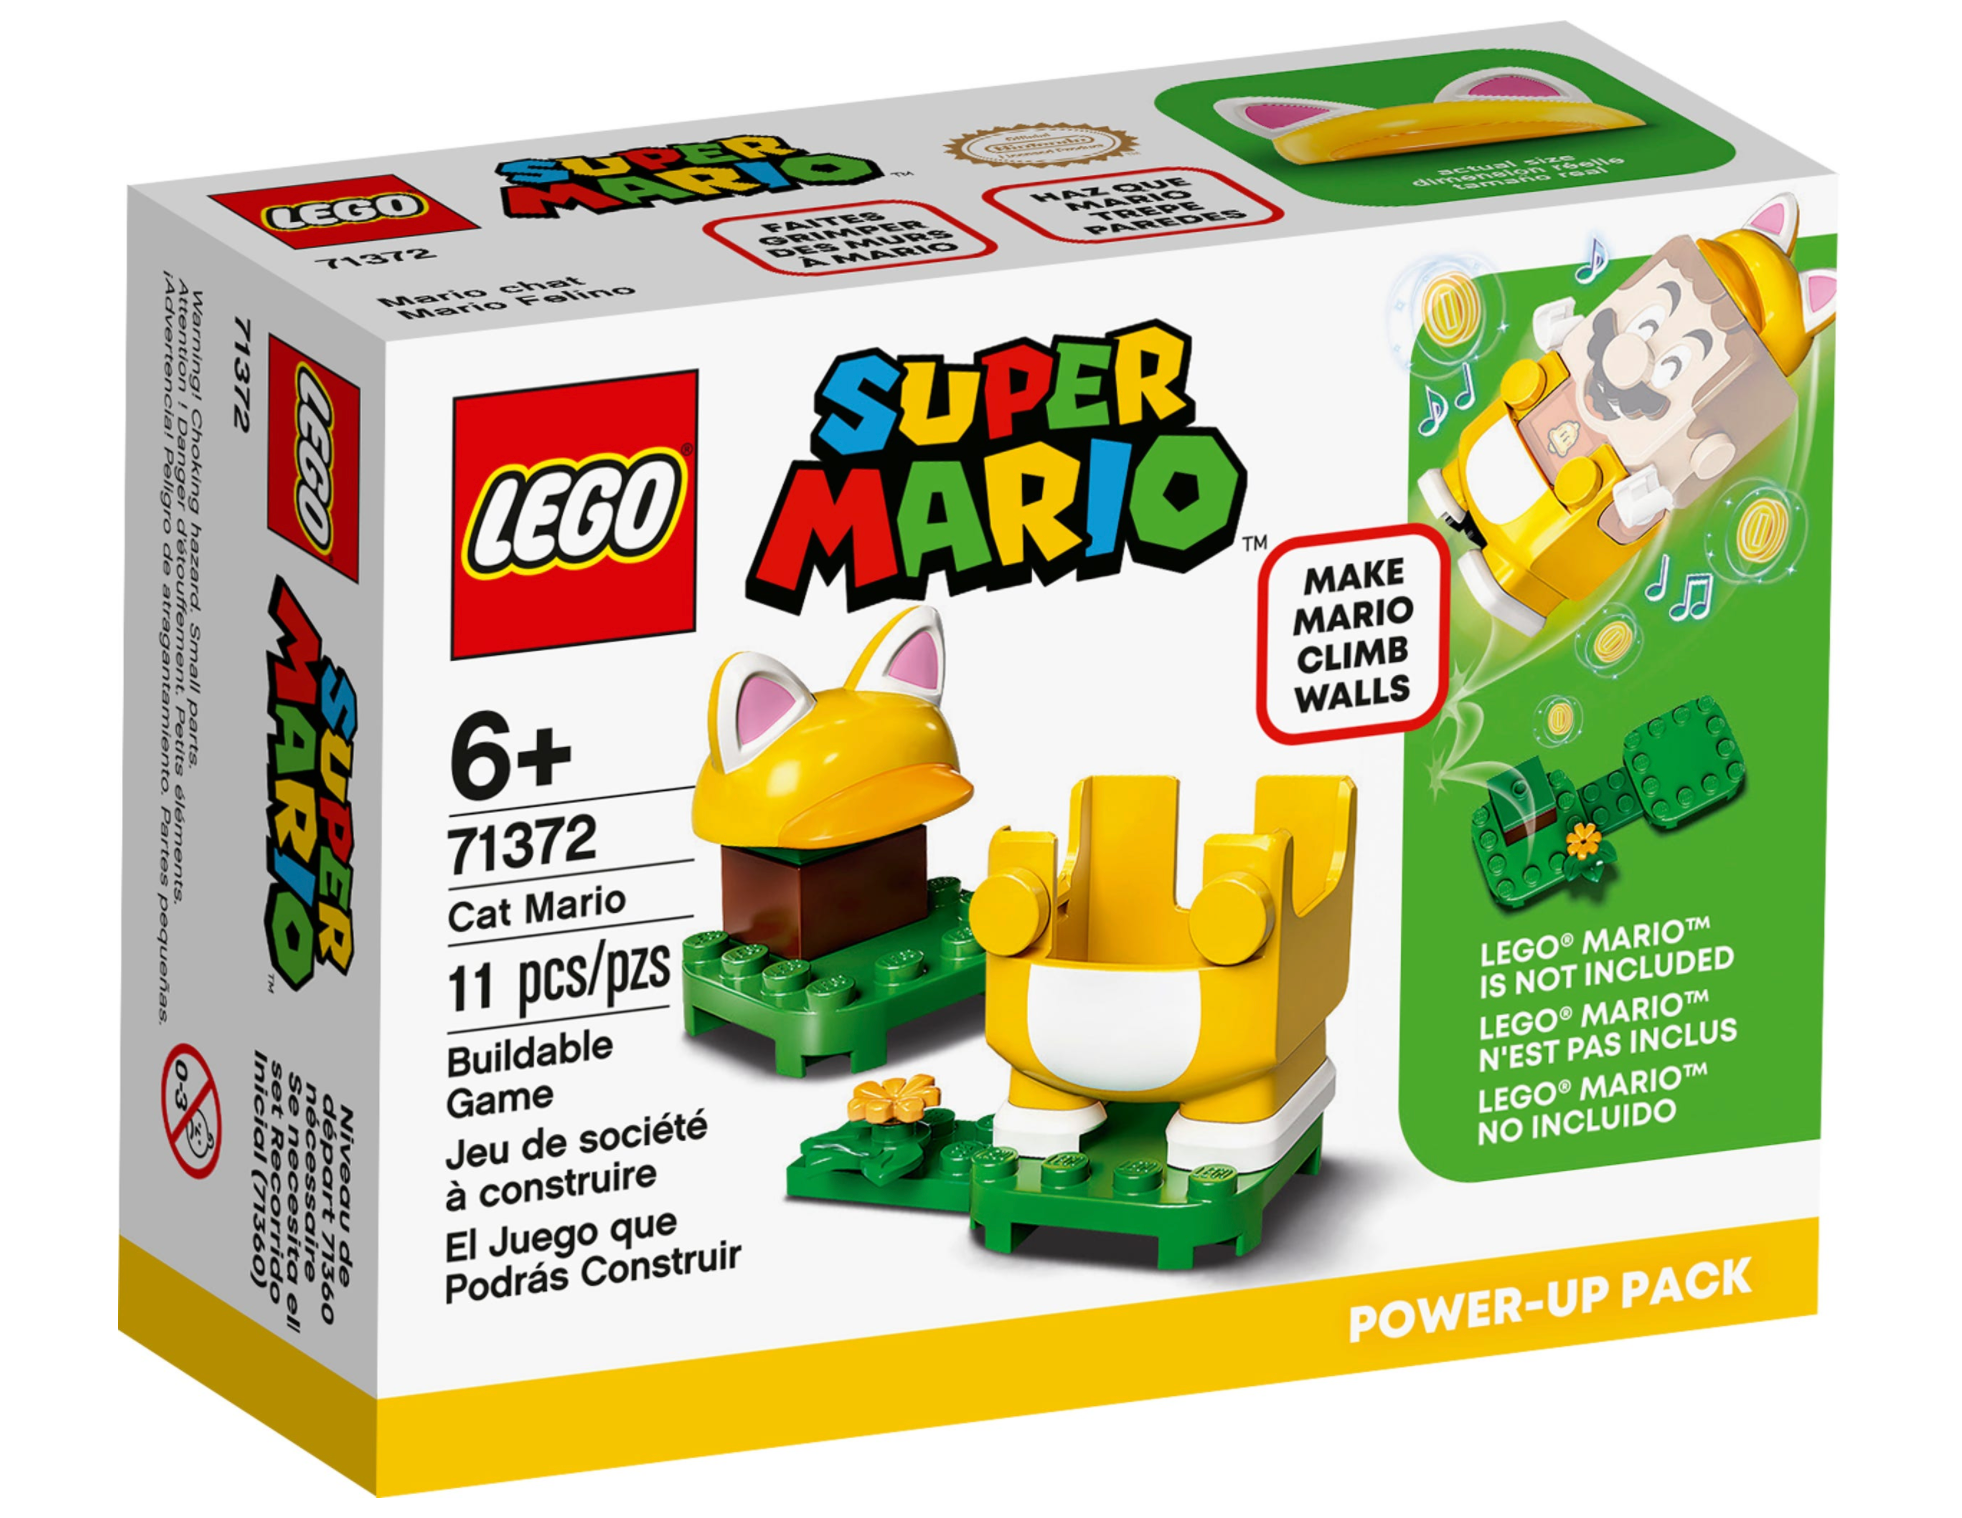 LEGO: Super Mario - Cat Mario Power-Up Pack